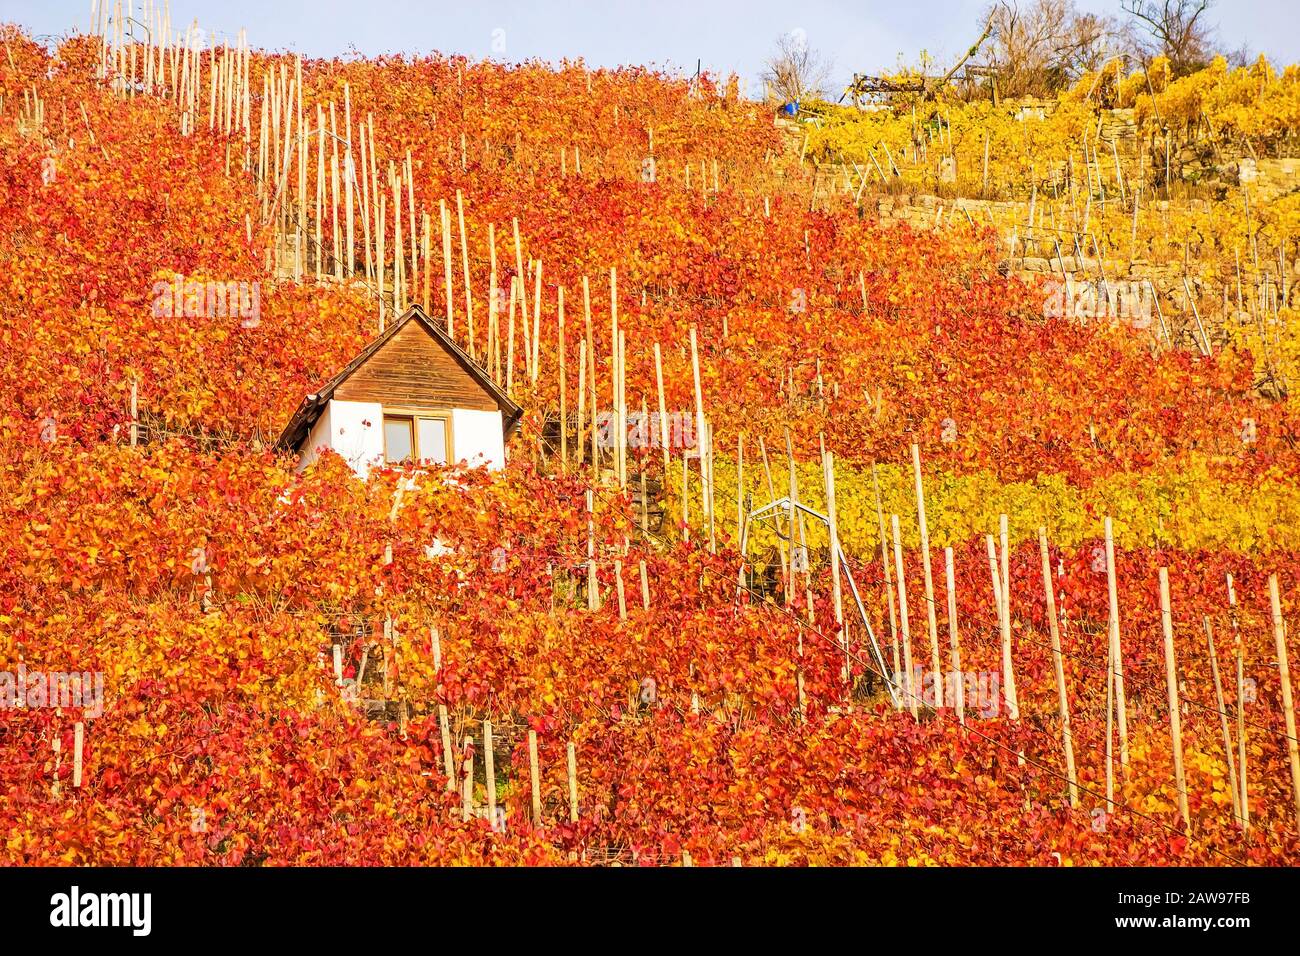 Vigneto in autunno - capanna viticola di vinaiolo tra viti in collina con foglie giallo rosso dorato Foto Stock